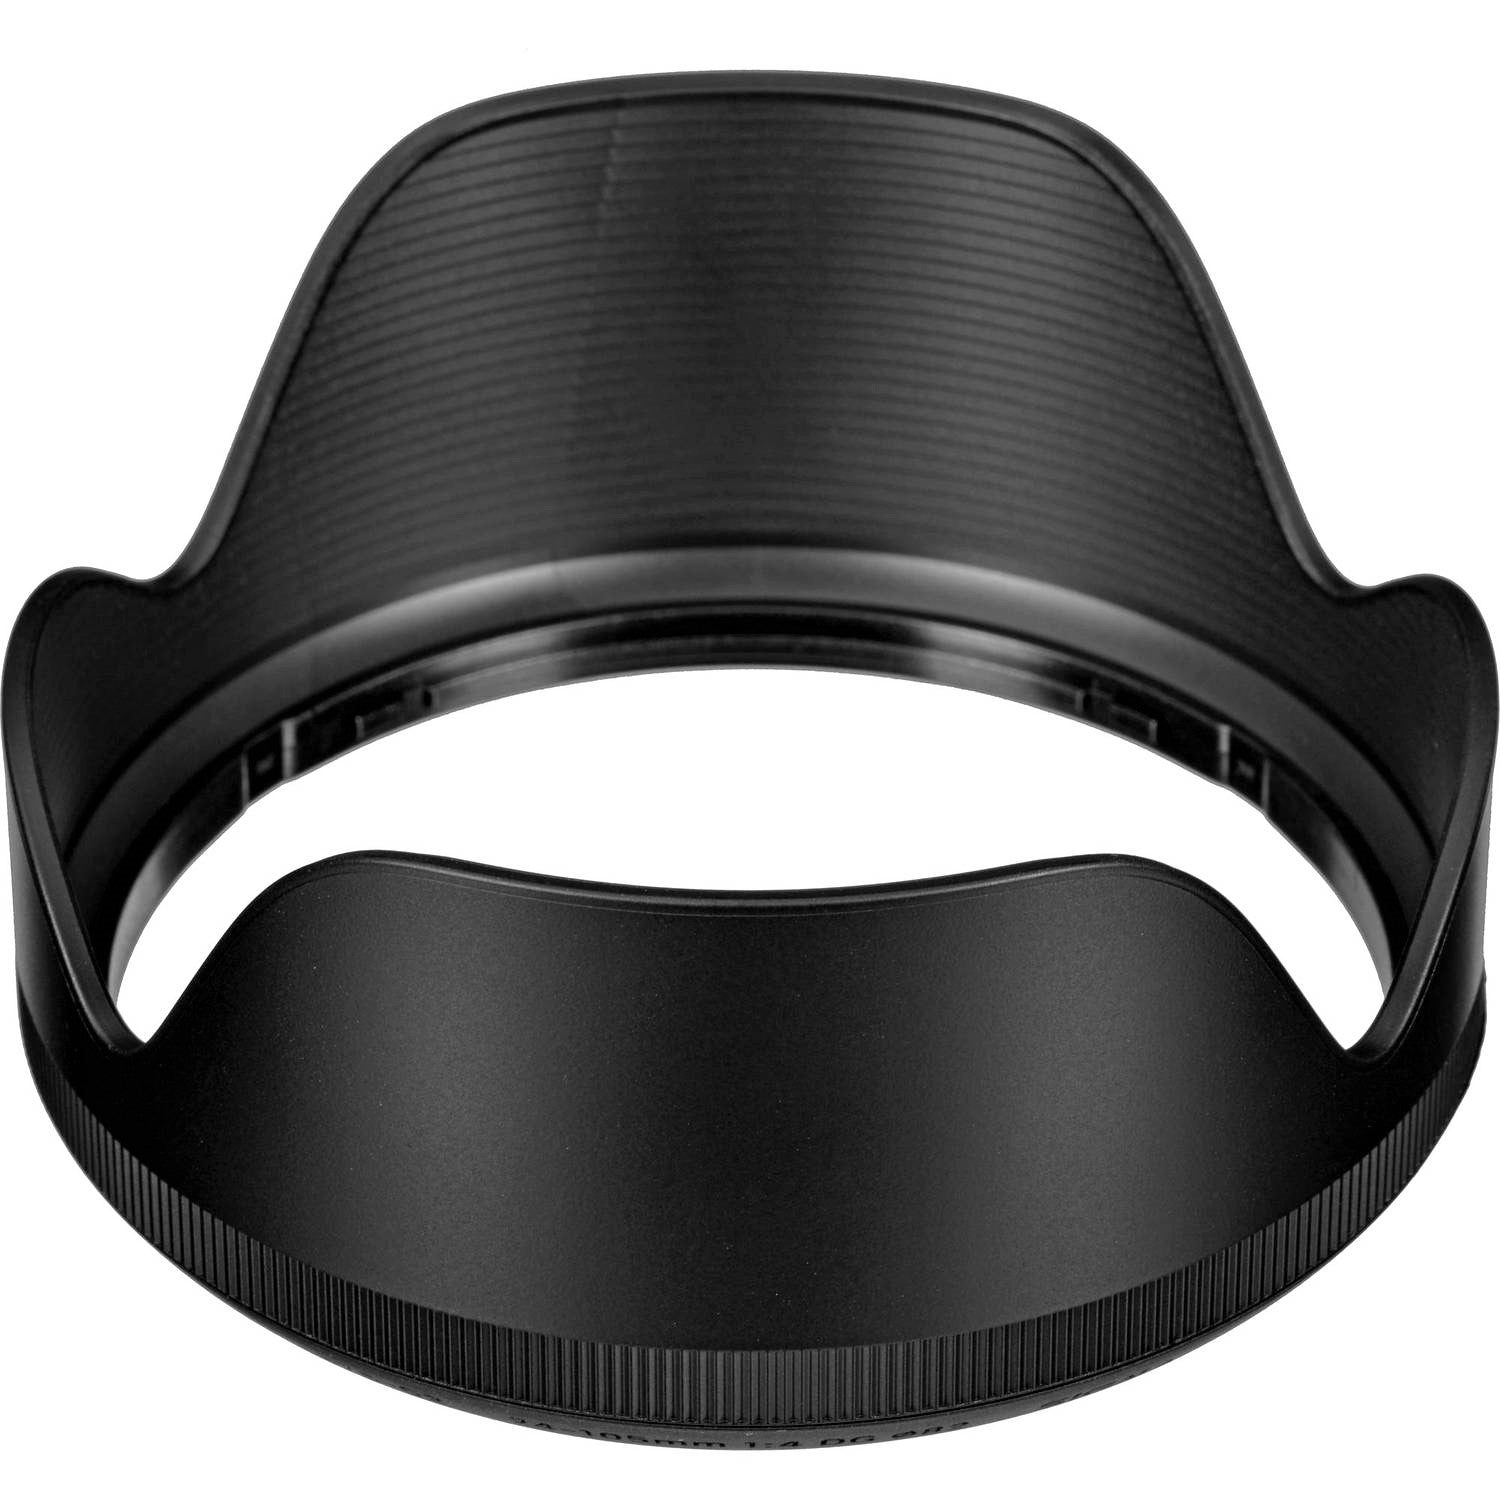 Sigma Lens Hood for 24-105mm F4.0 Art Digital OS HSM Lens